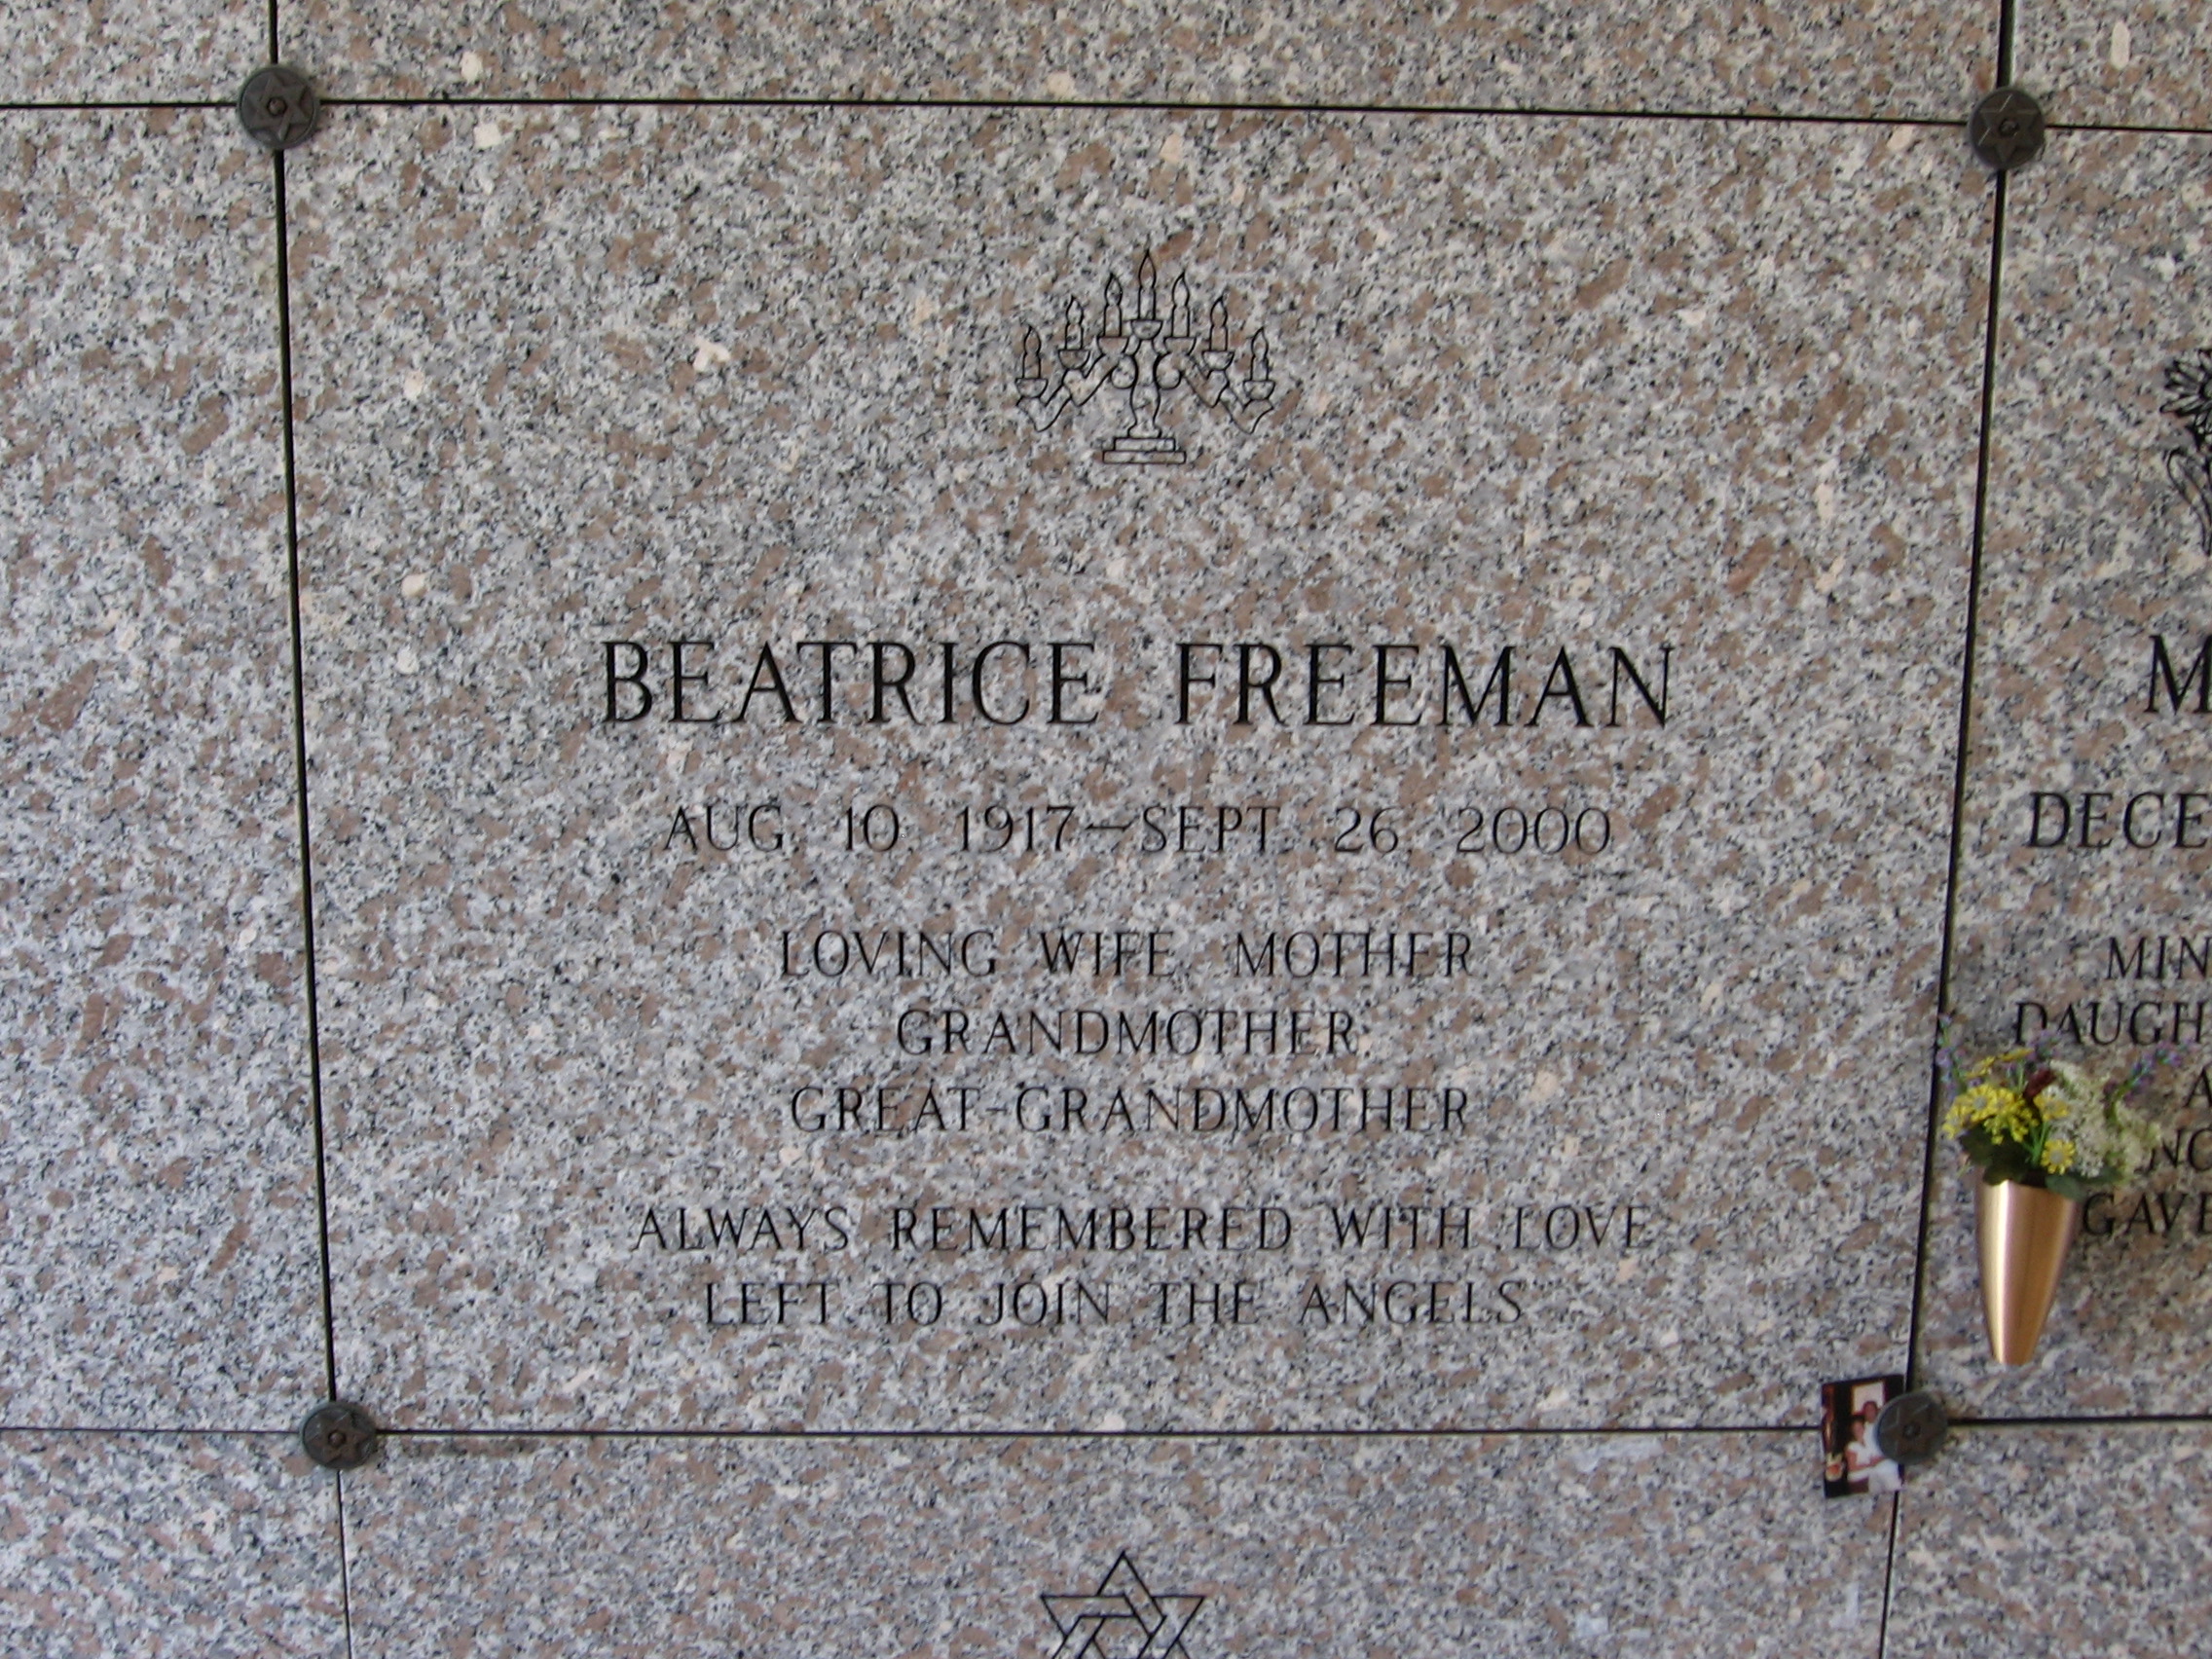 Beatrice Freeman